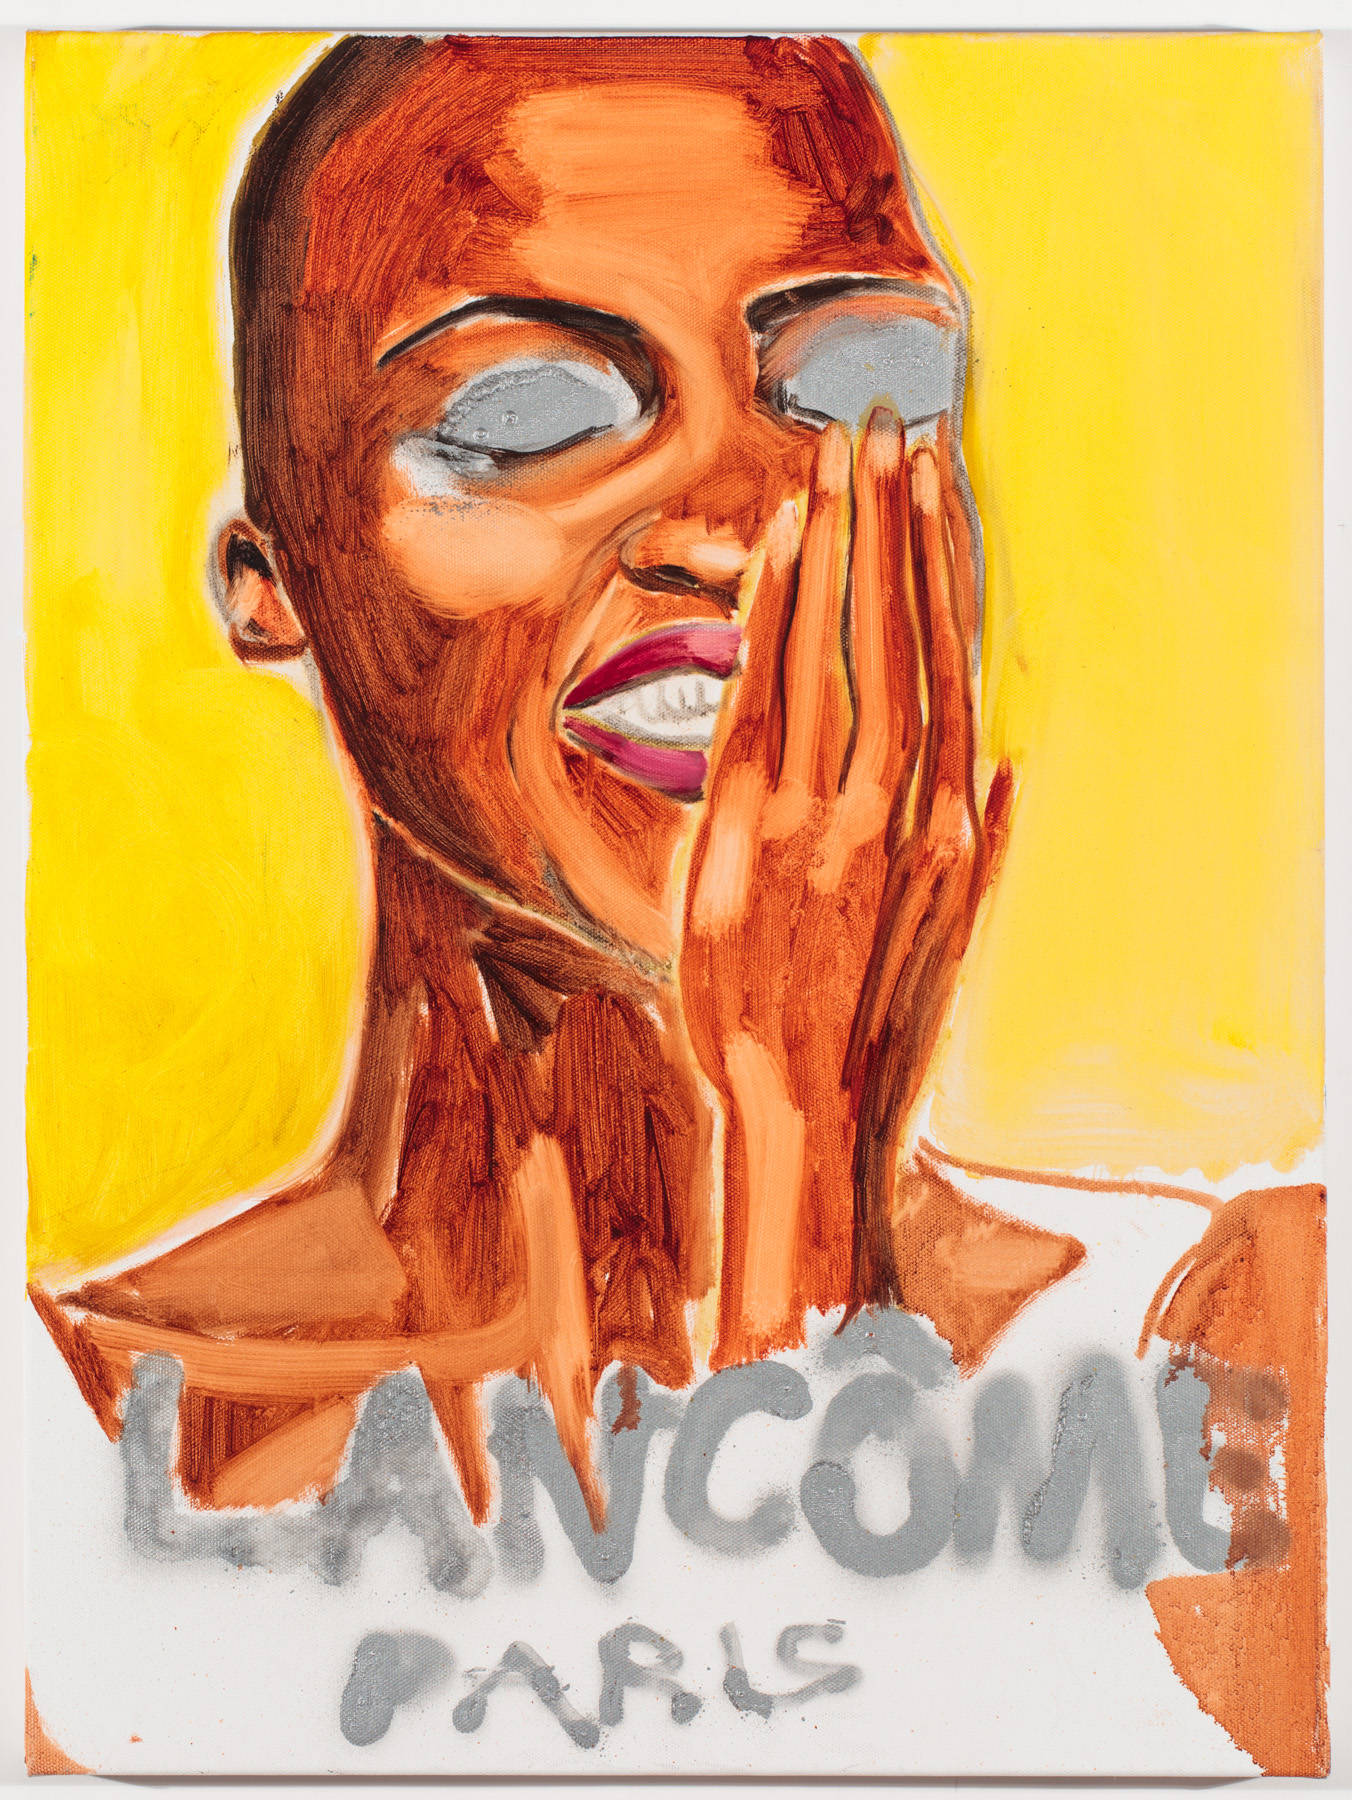 Lancôme, Spray paint and Oil on Canvas, 2017, 20 x 16”